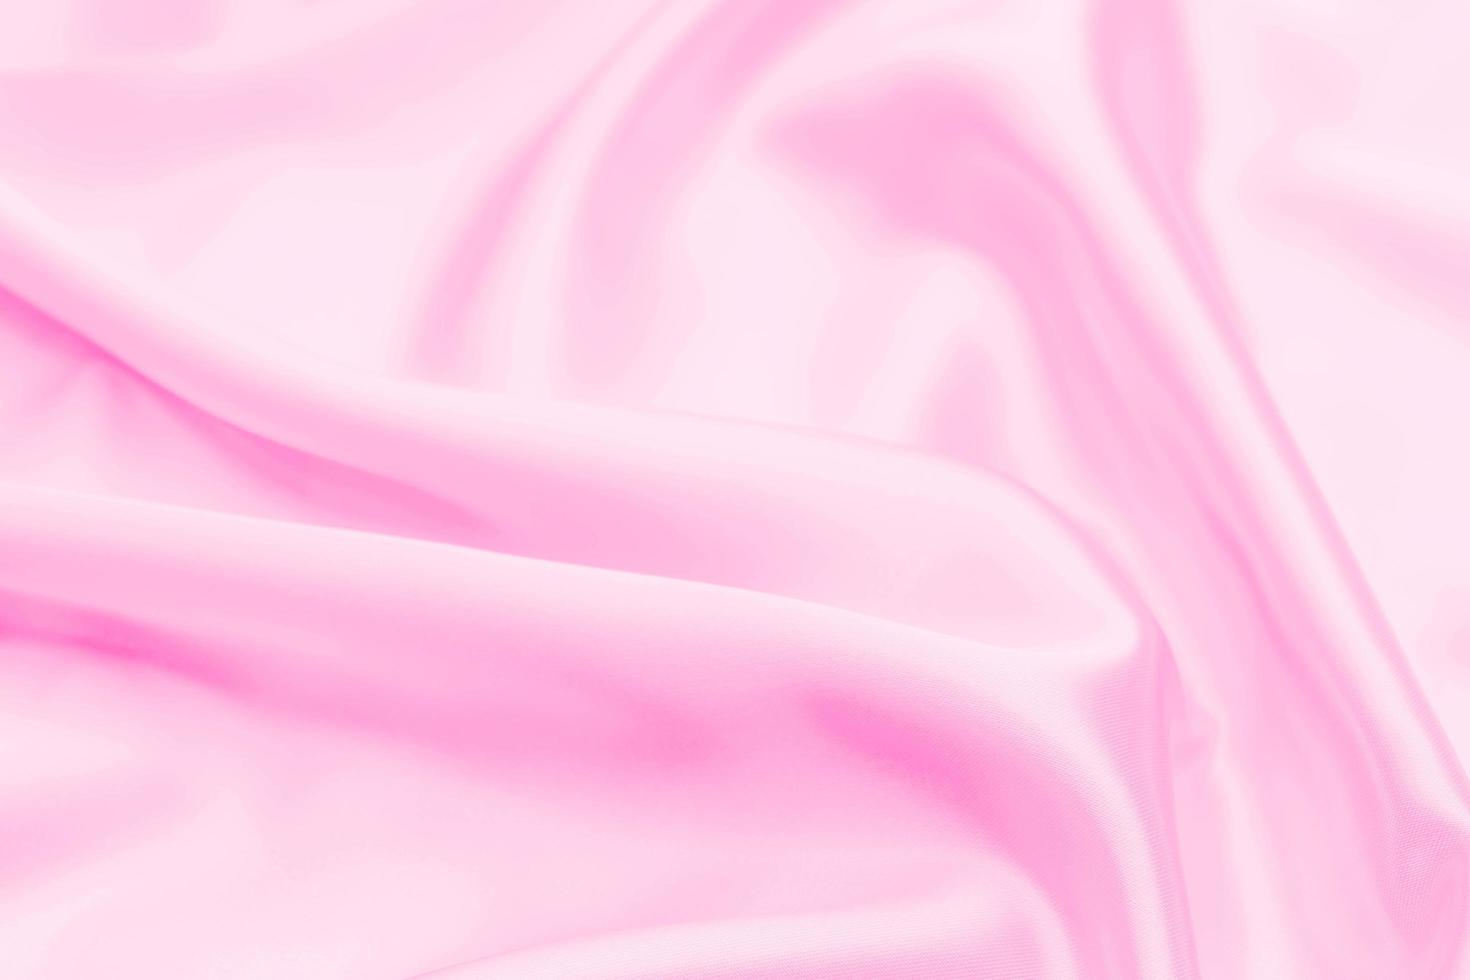 Texture de tissu en satin rose en plastique arrière-plan flou doux photo